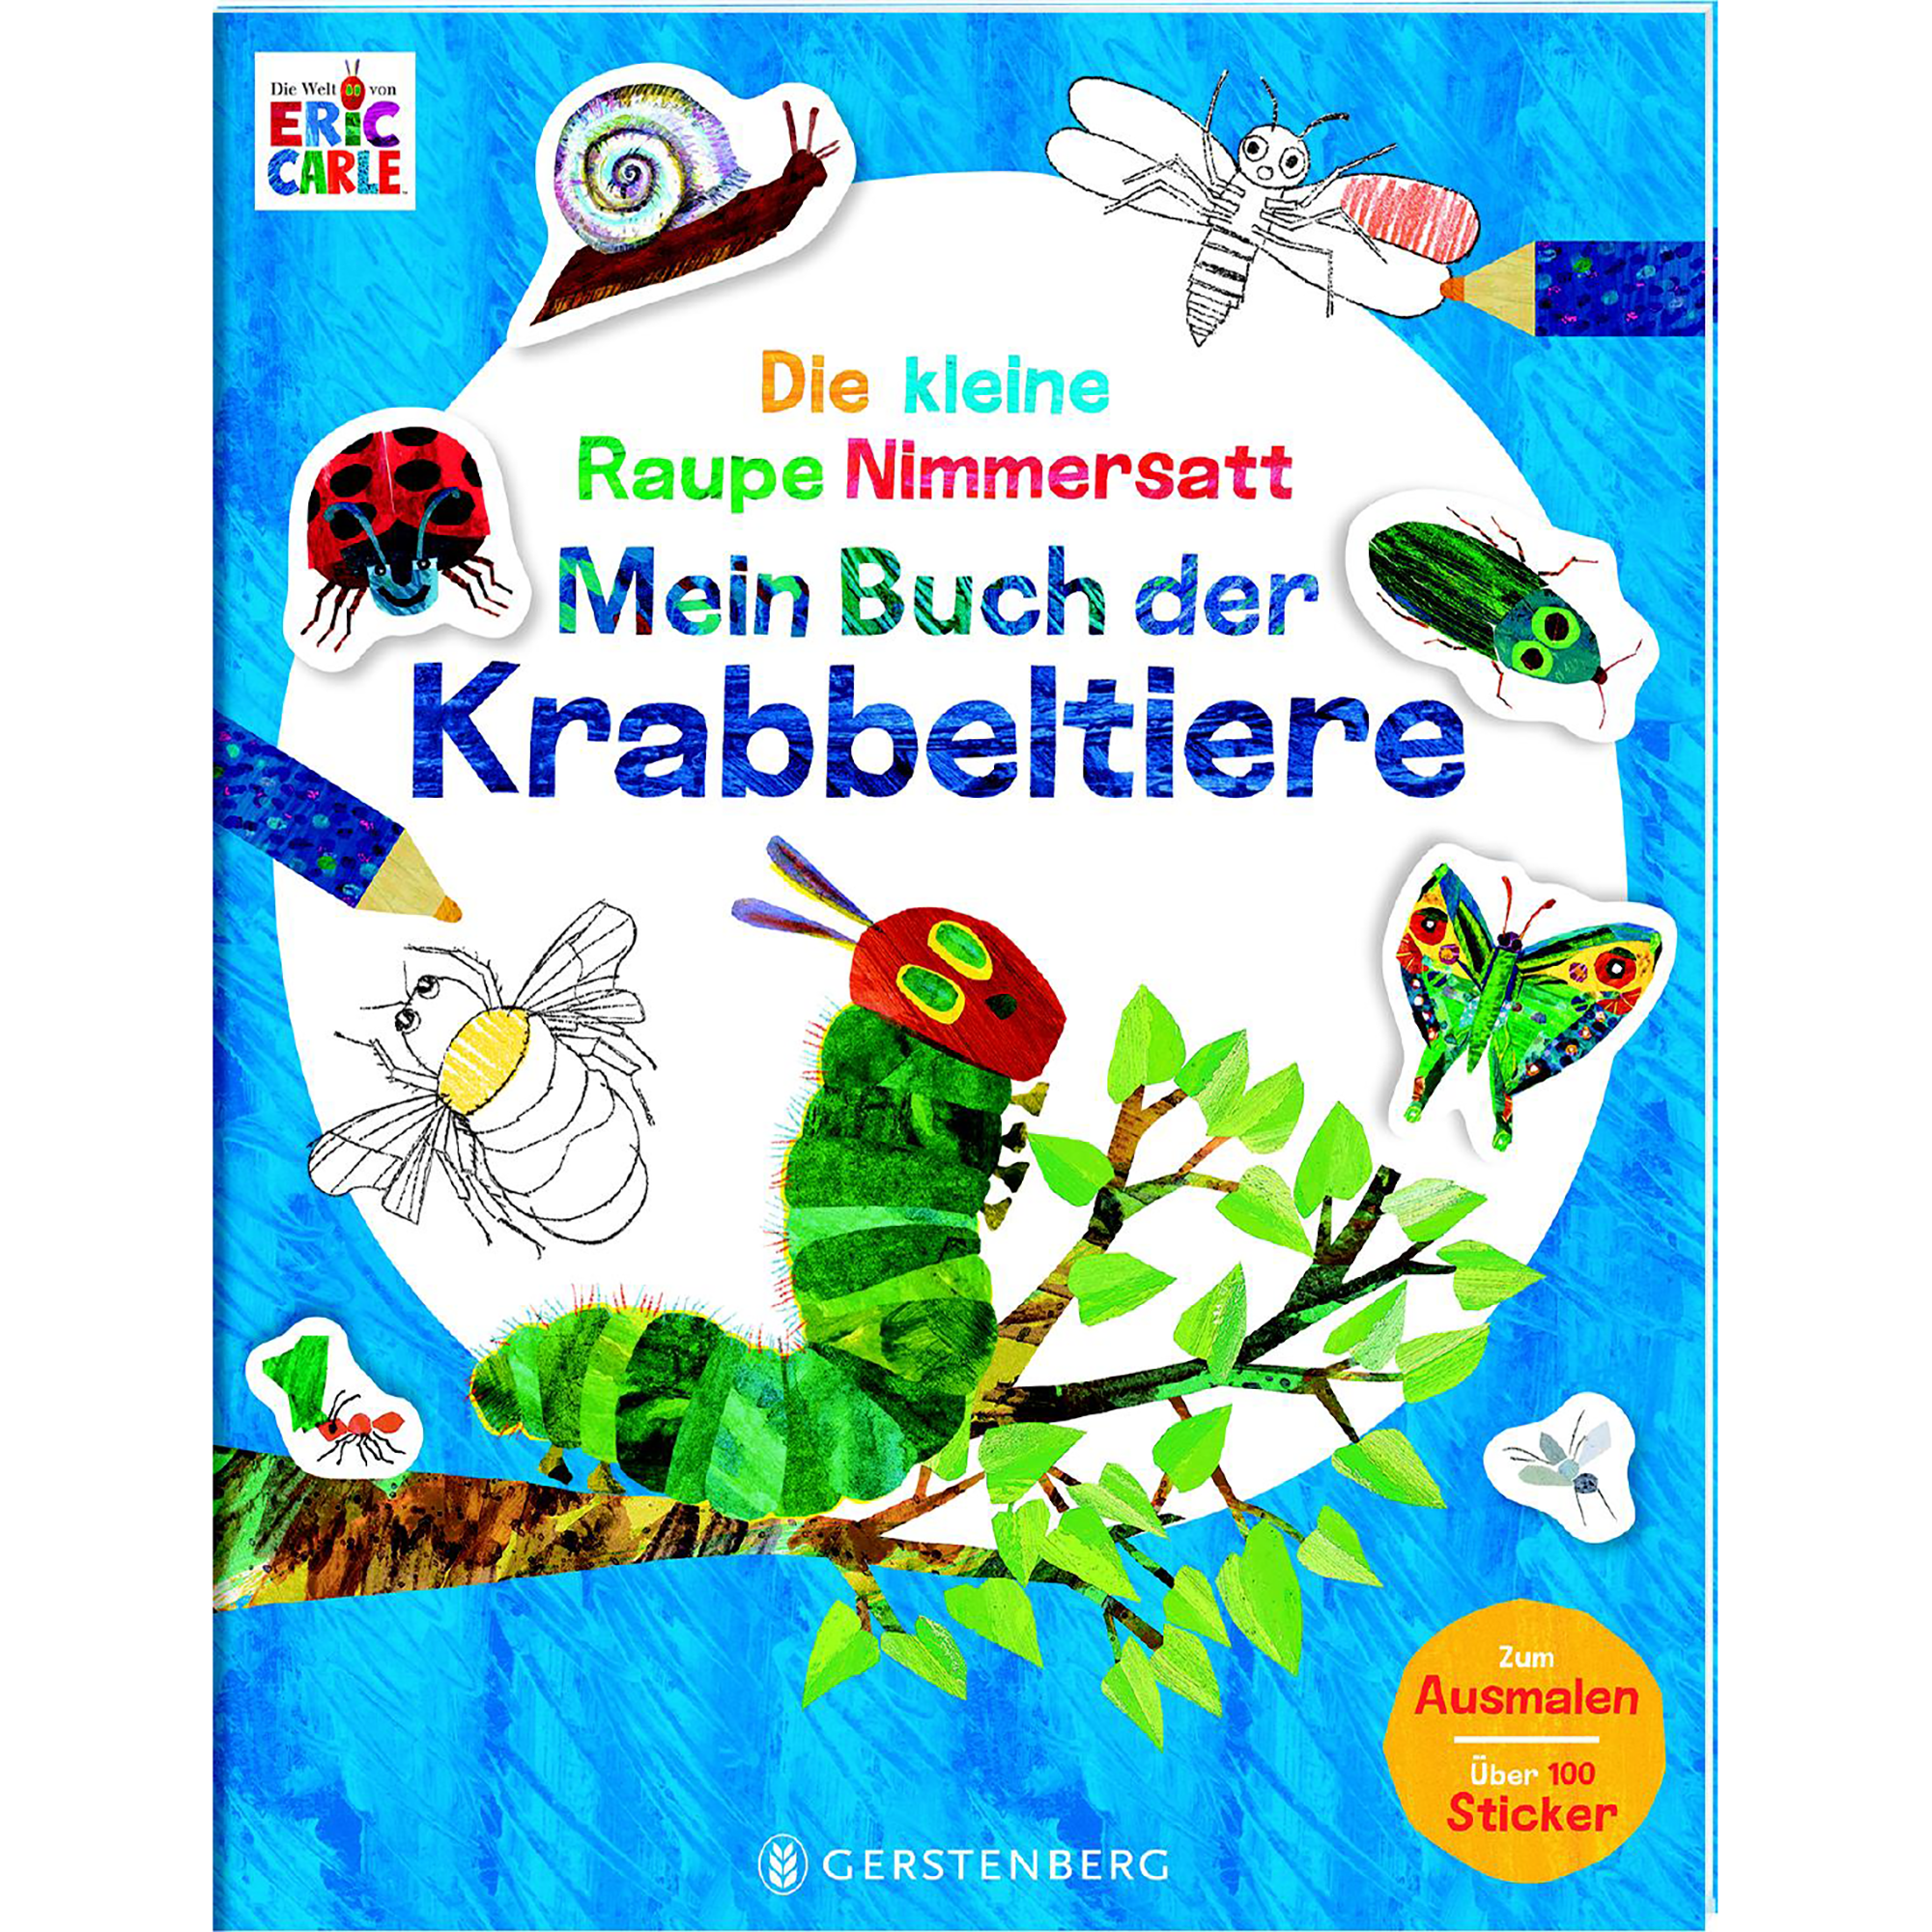 Die kleine Raupe Nimmersatt - Mein Buch der Krabbeltiere Gerstenberg Blau 2000581127408 1